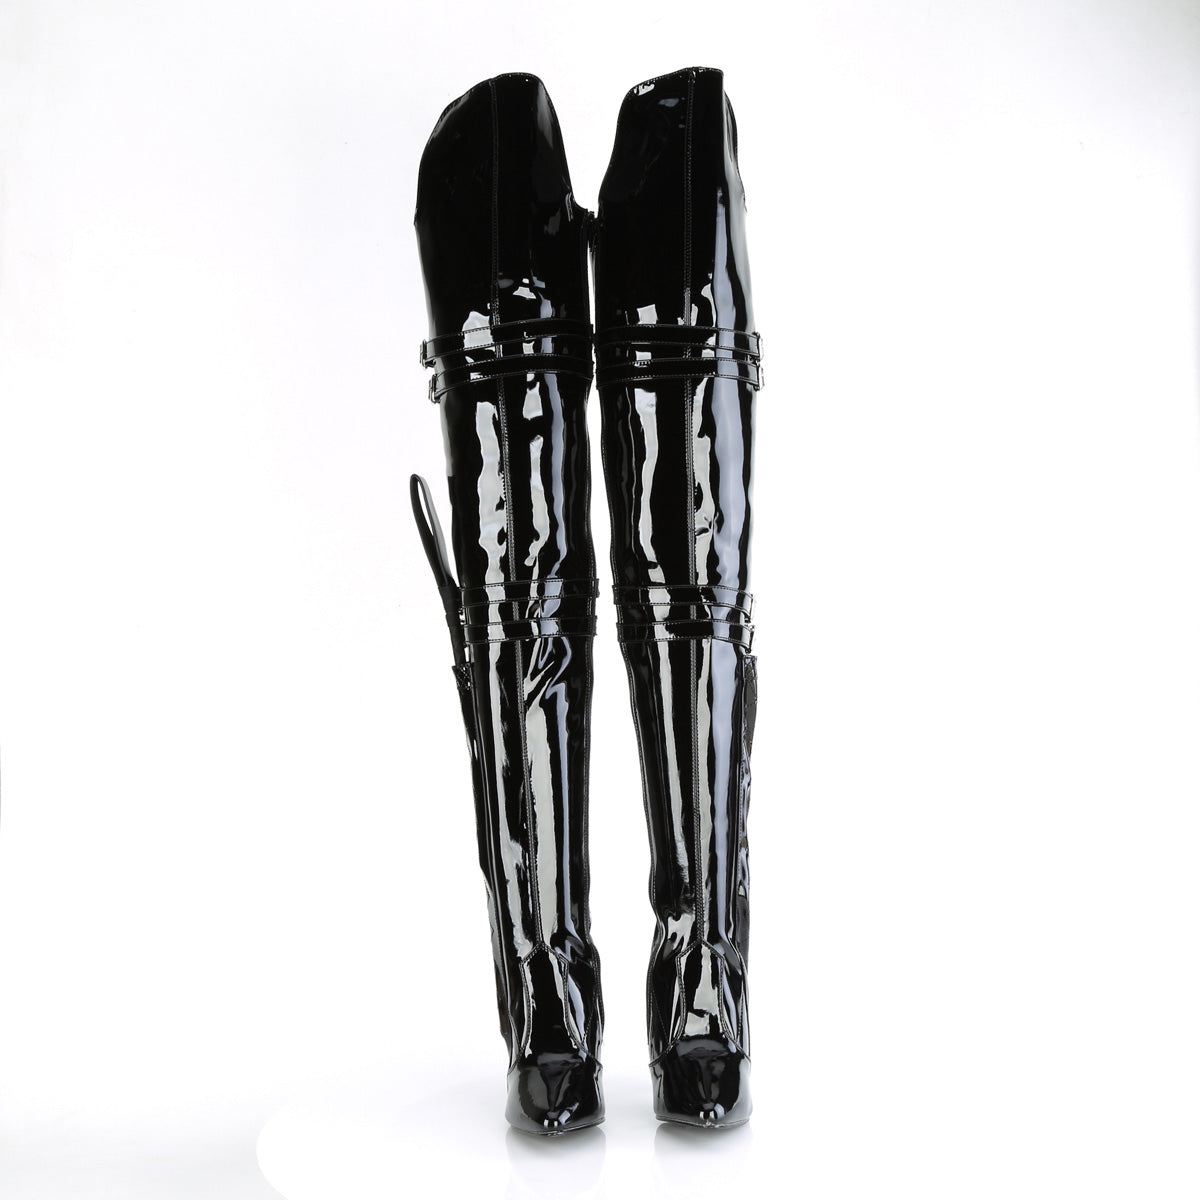 SEDUCE-3080 Black Thigh High Boots